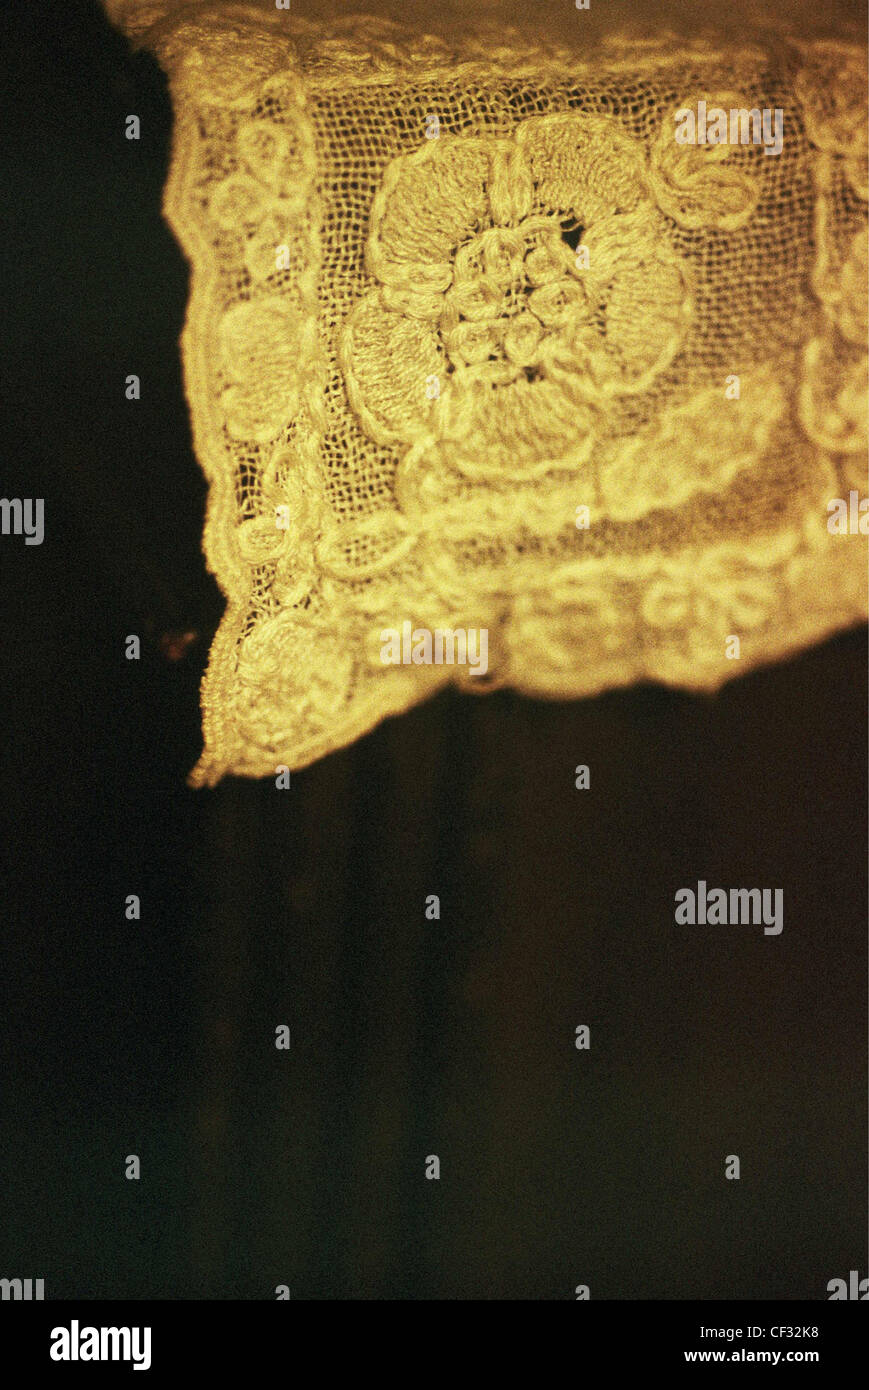 Close up detail de tissu en dentelle brodé dans des tons chauds de jaune et d'or avec une fleur de couleur sur fond noir Banque D'Images